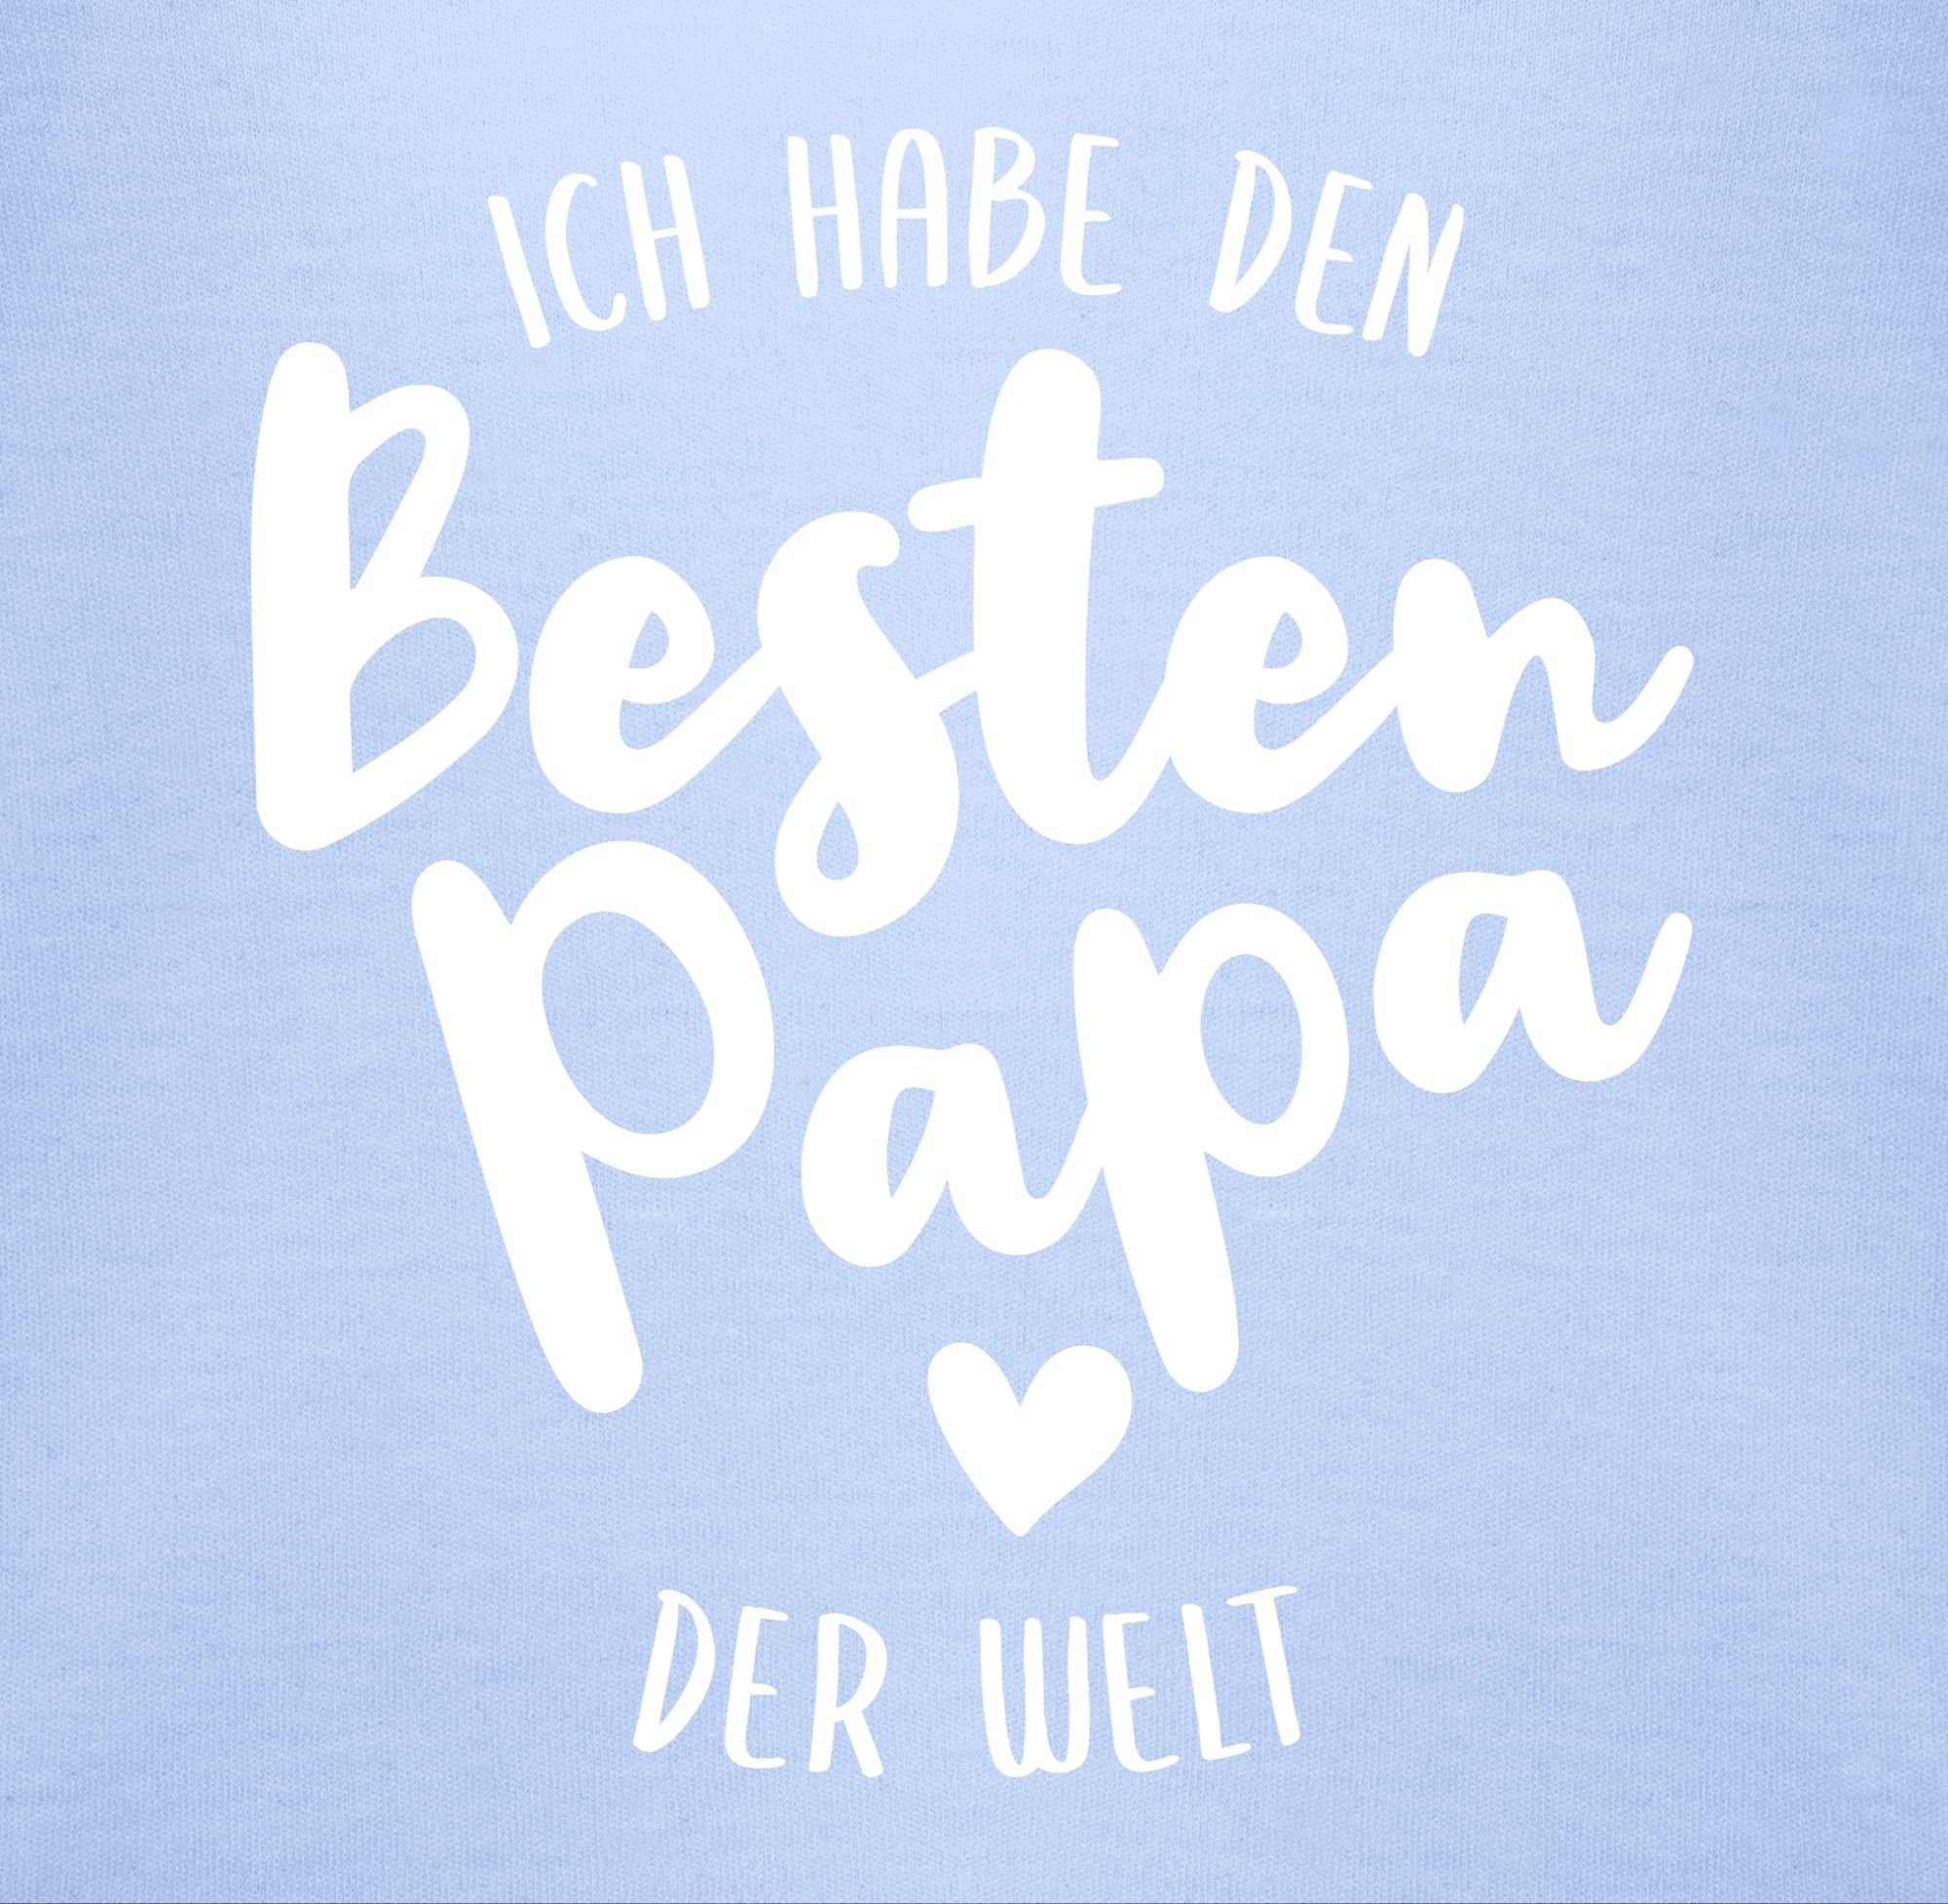 3 T-Shirt Welt Babyblau besten Shirtracer Geschenk Vatertag Ich den habe der Papa Baby